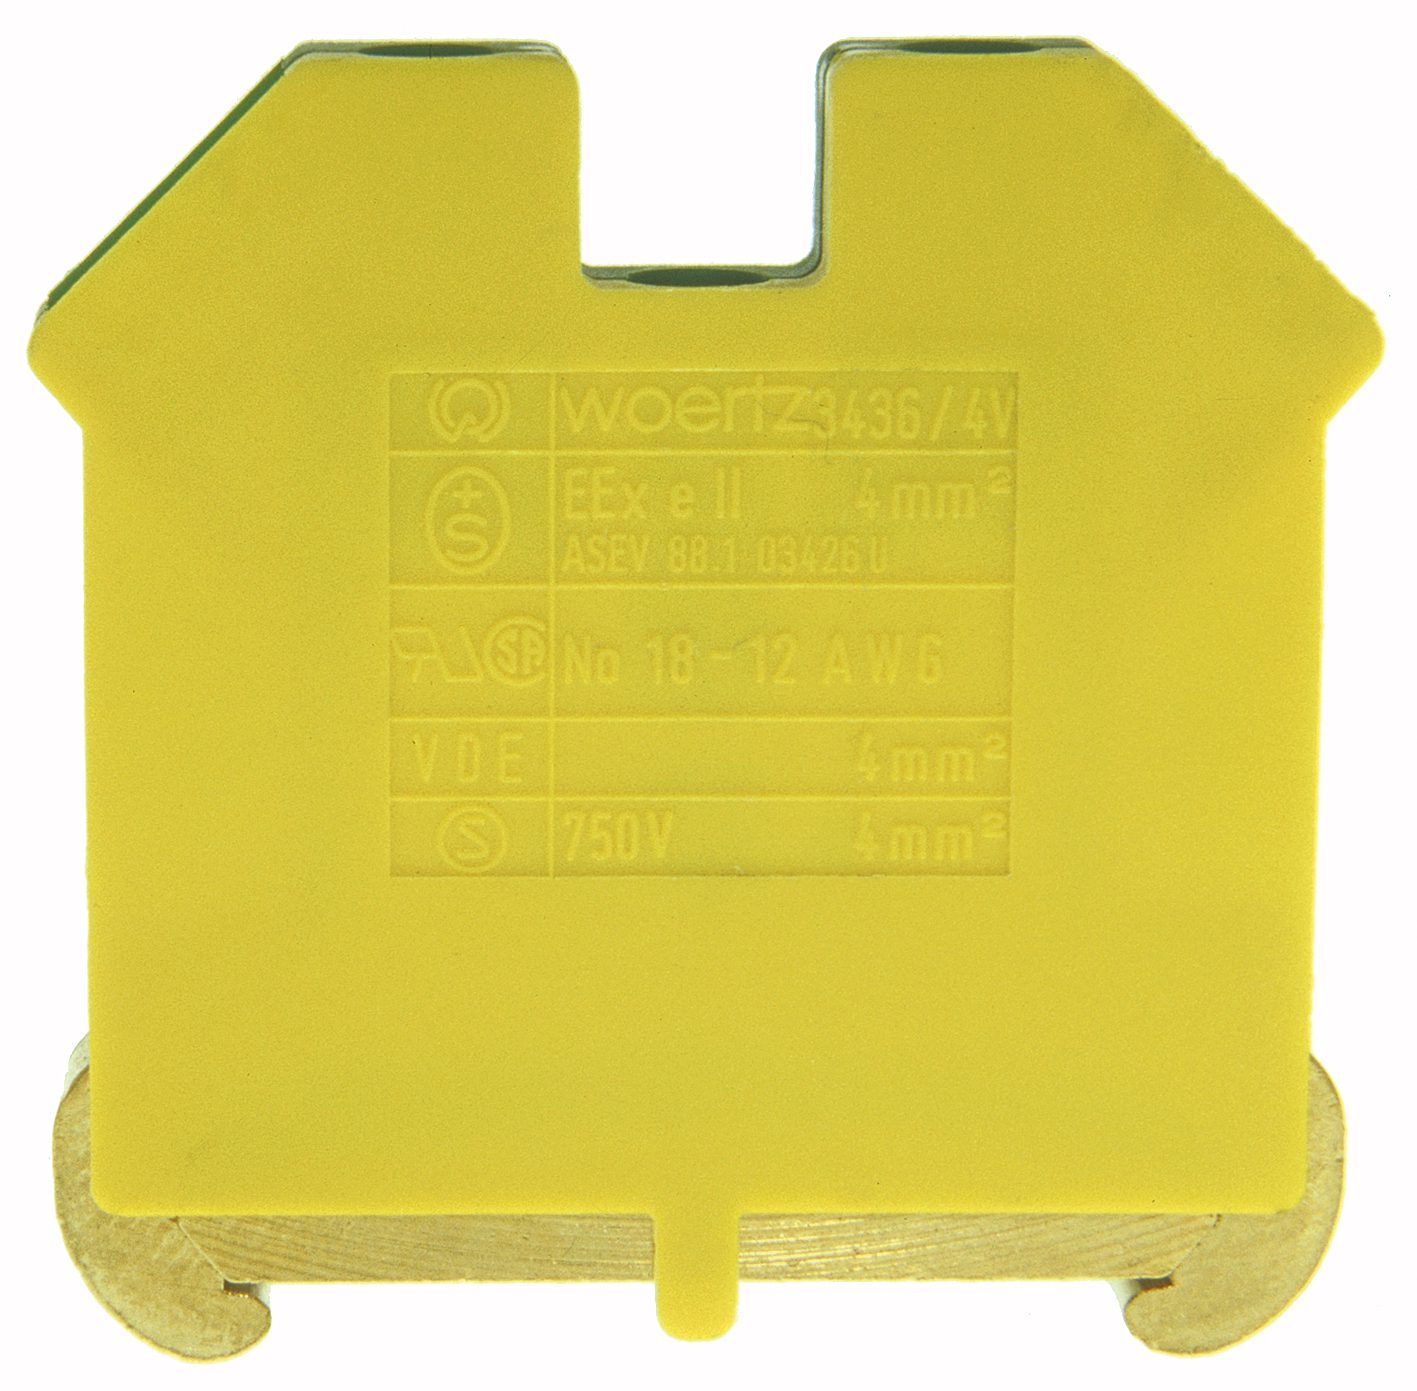 Terminale conduttore di protezione DIN35 4mm² verde/giallo